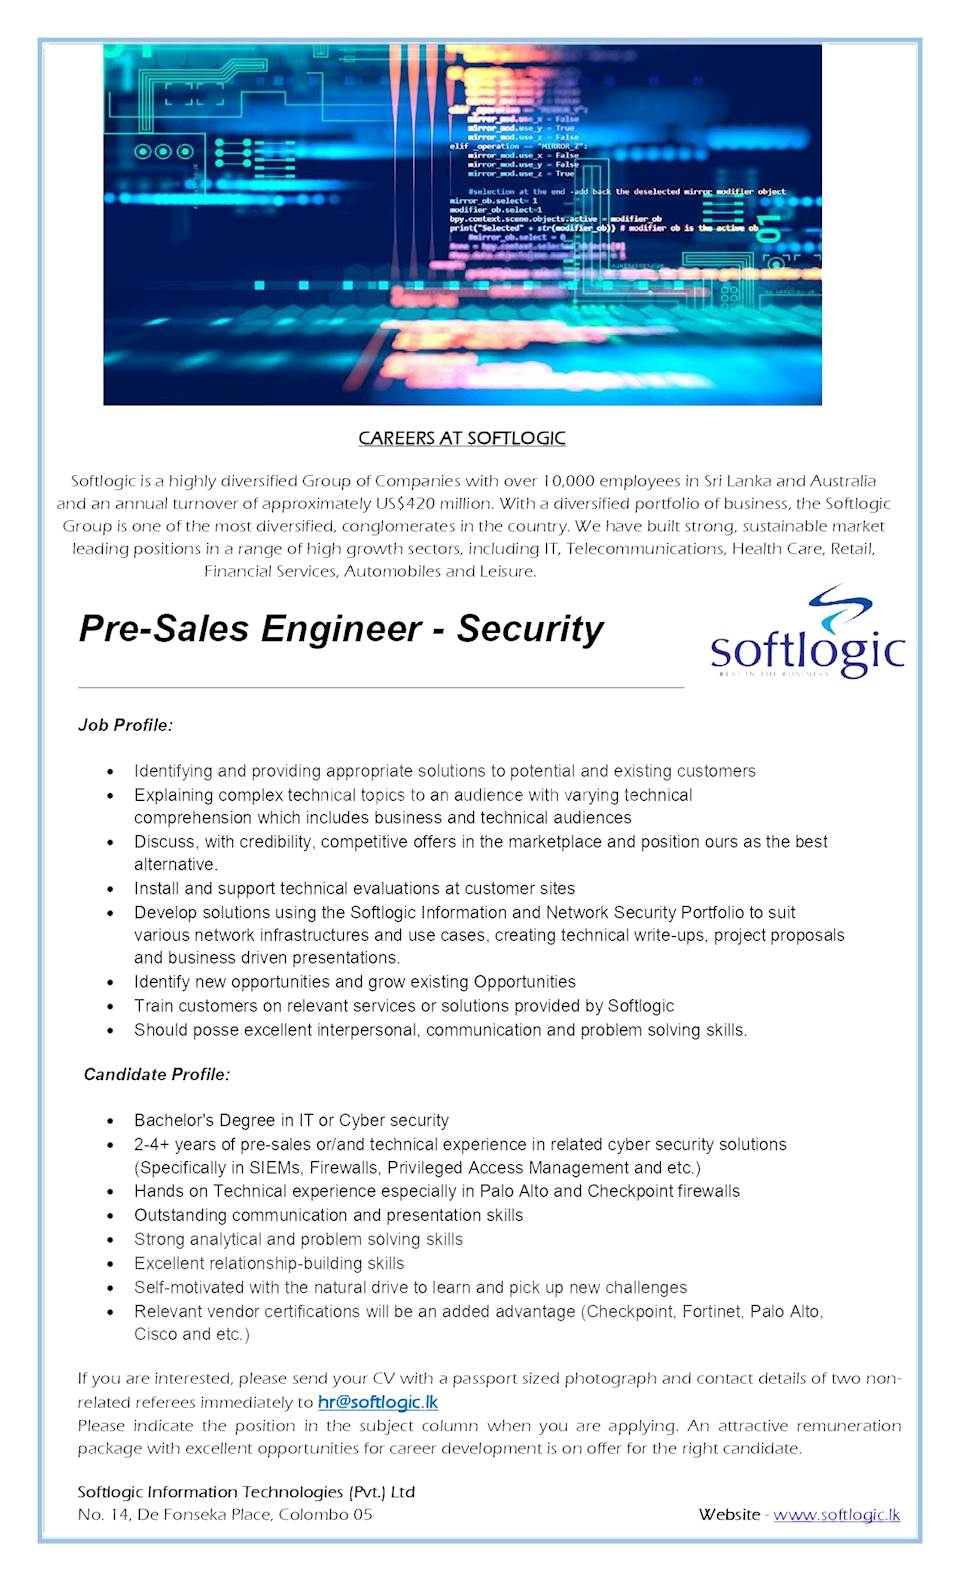 Pre-Sales Engineer - Security